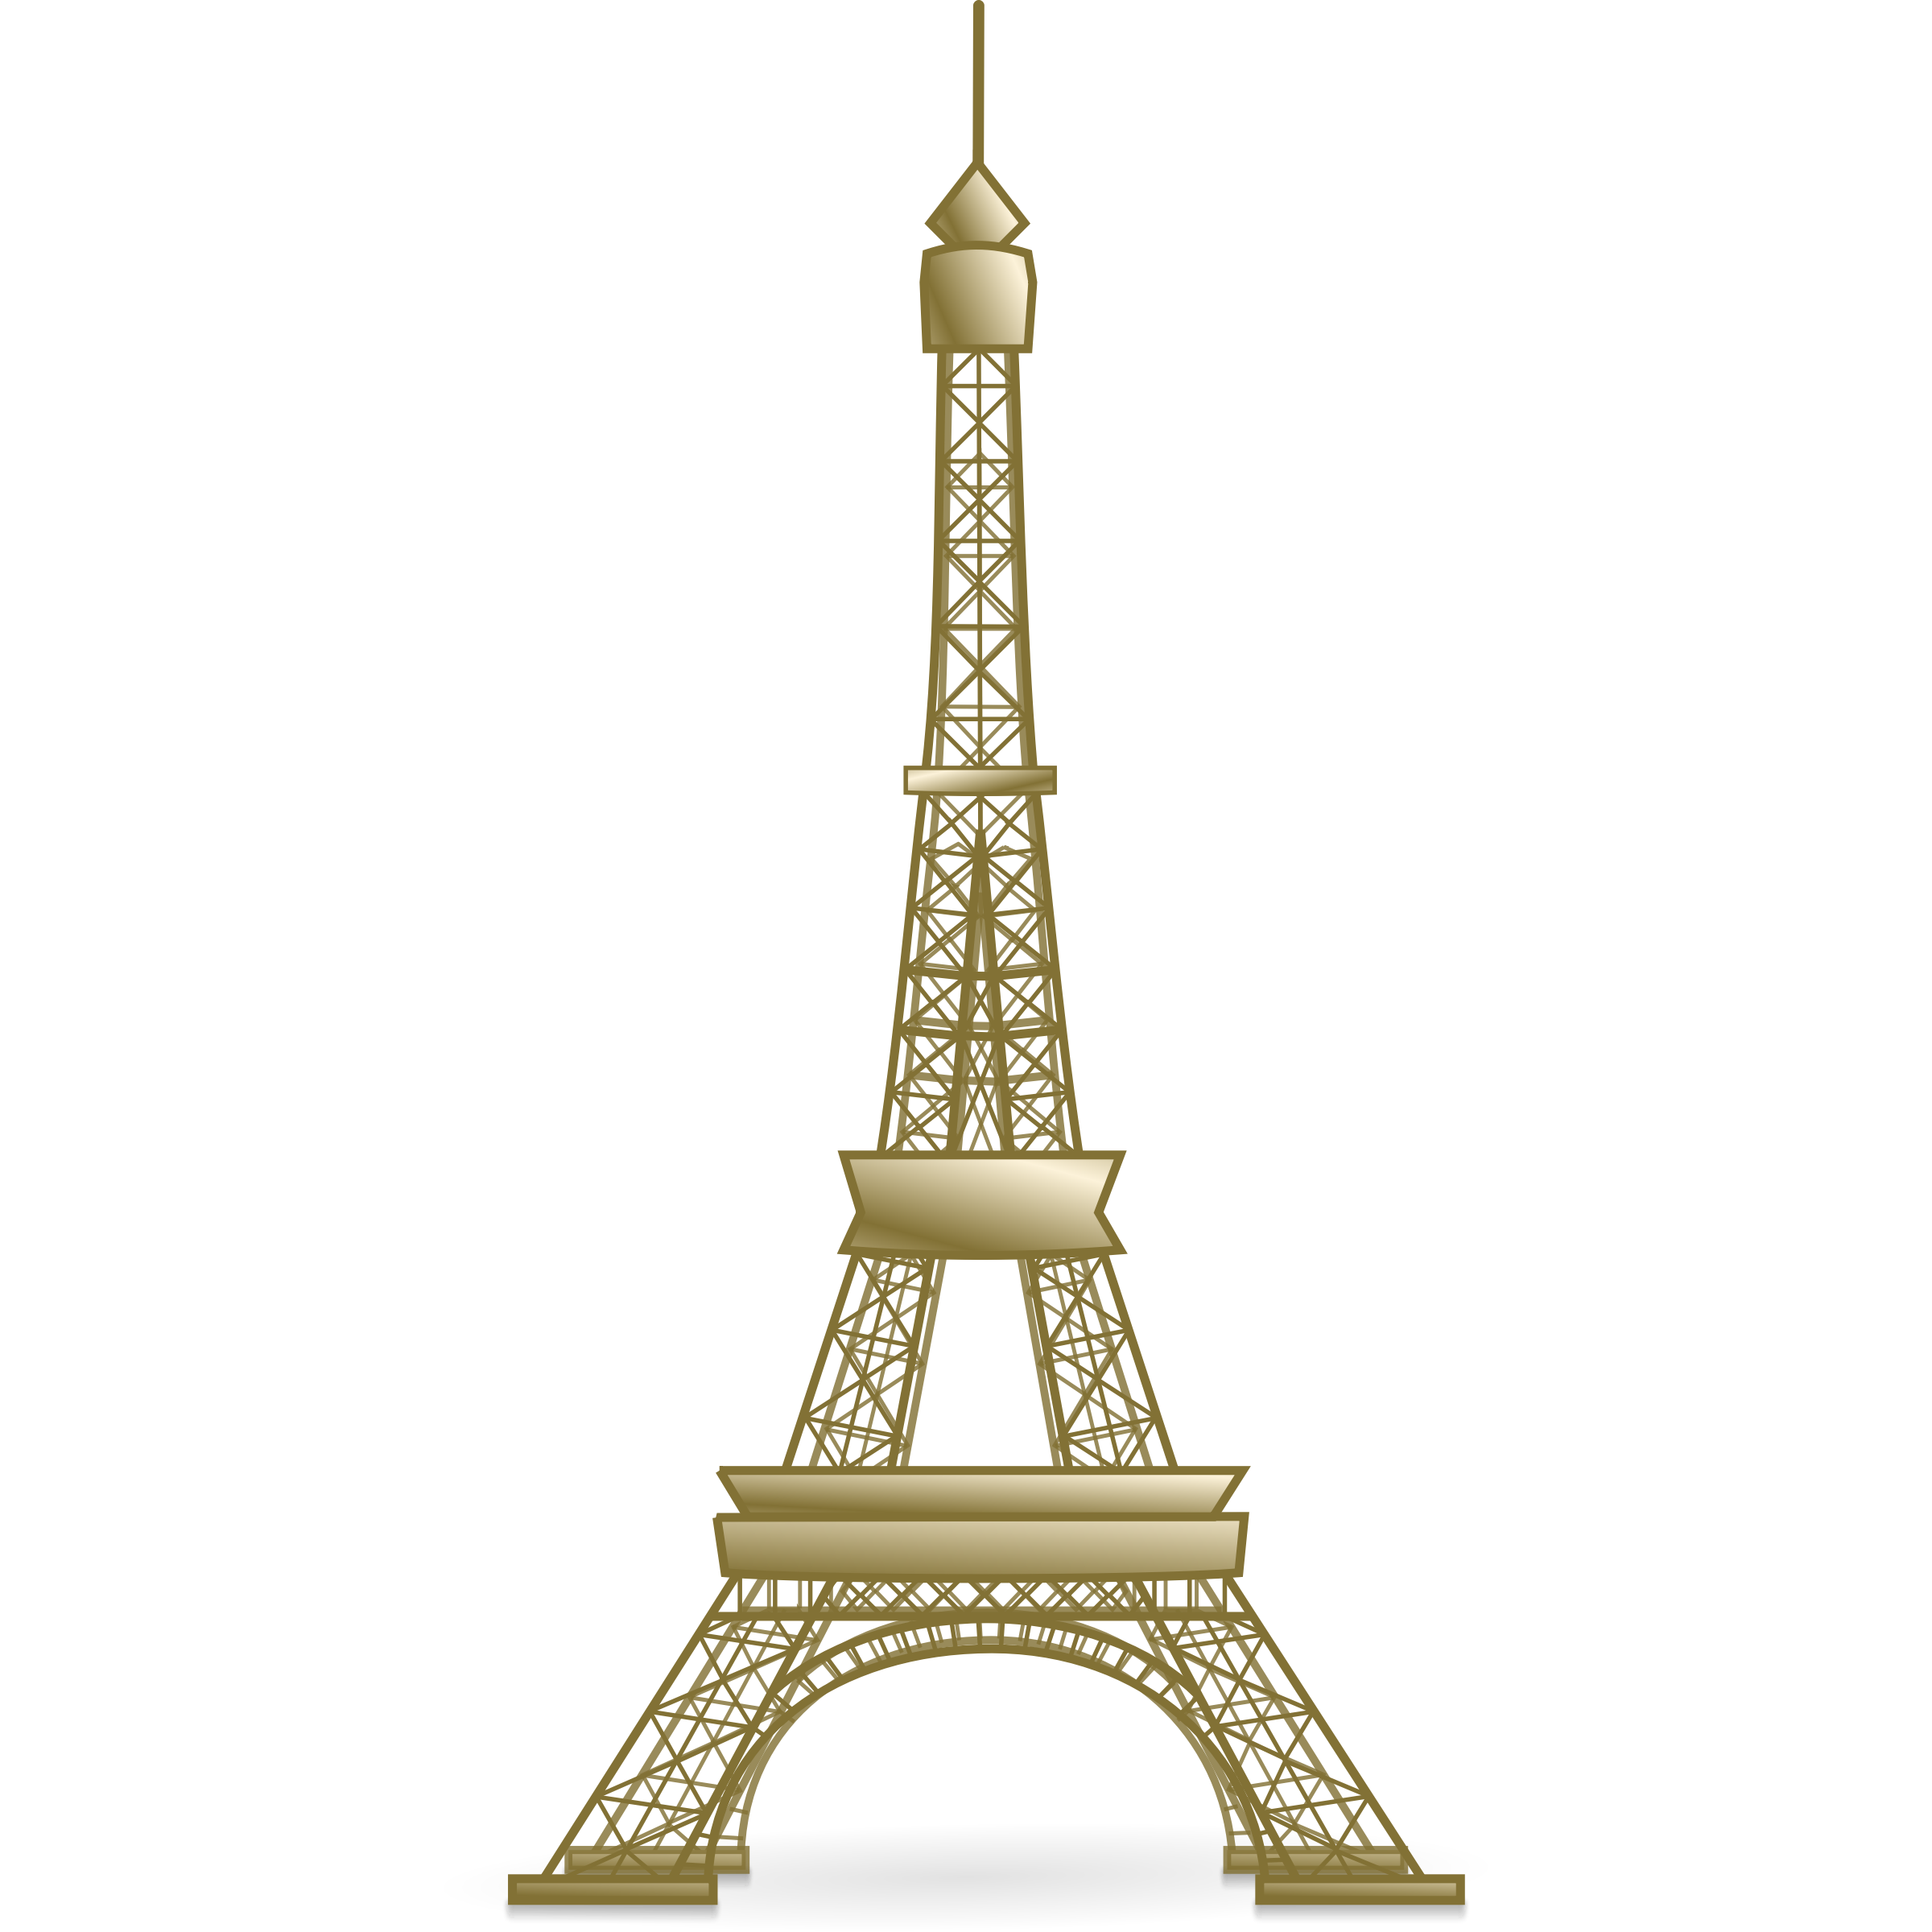 Eiffel tower art on paris paris art and tour eiffel clipart 